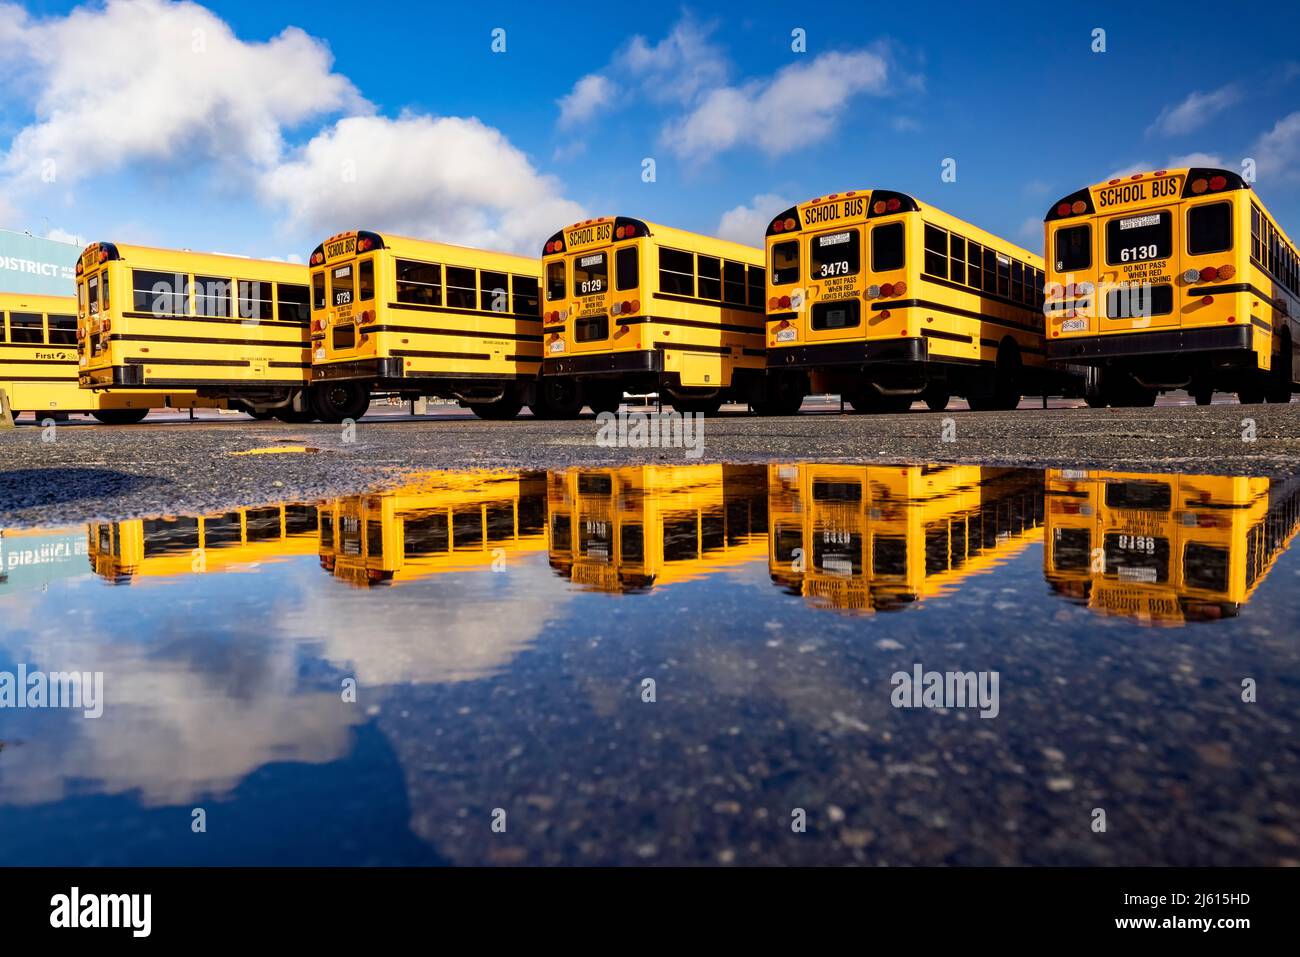 Farbenfrohe Schulbus-Reflektionen am Ogden Point Pier - Victoria, Vancouver Island, British Columbia, Kanada Stockfoto